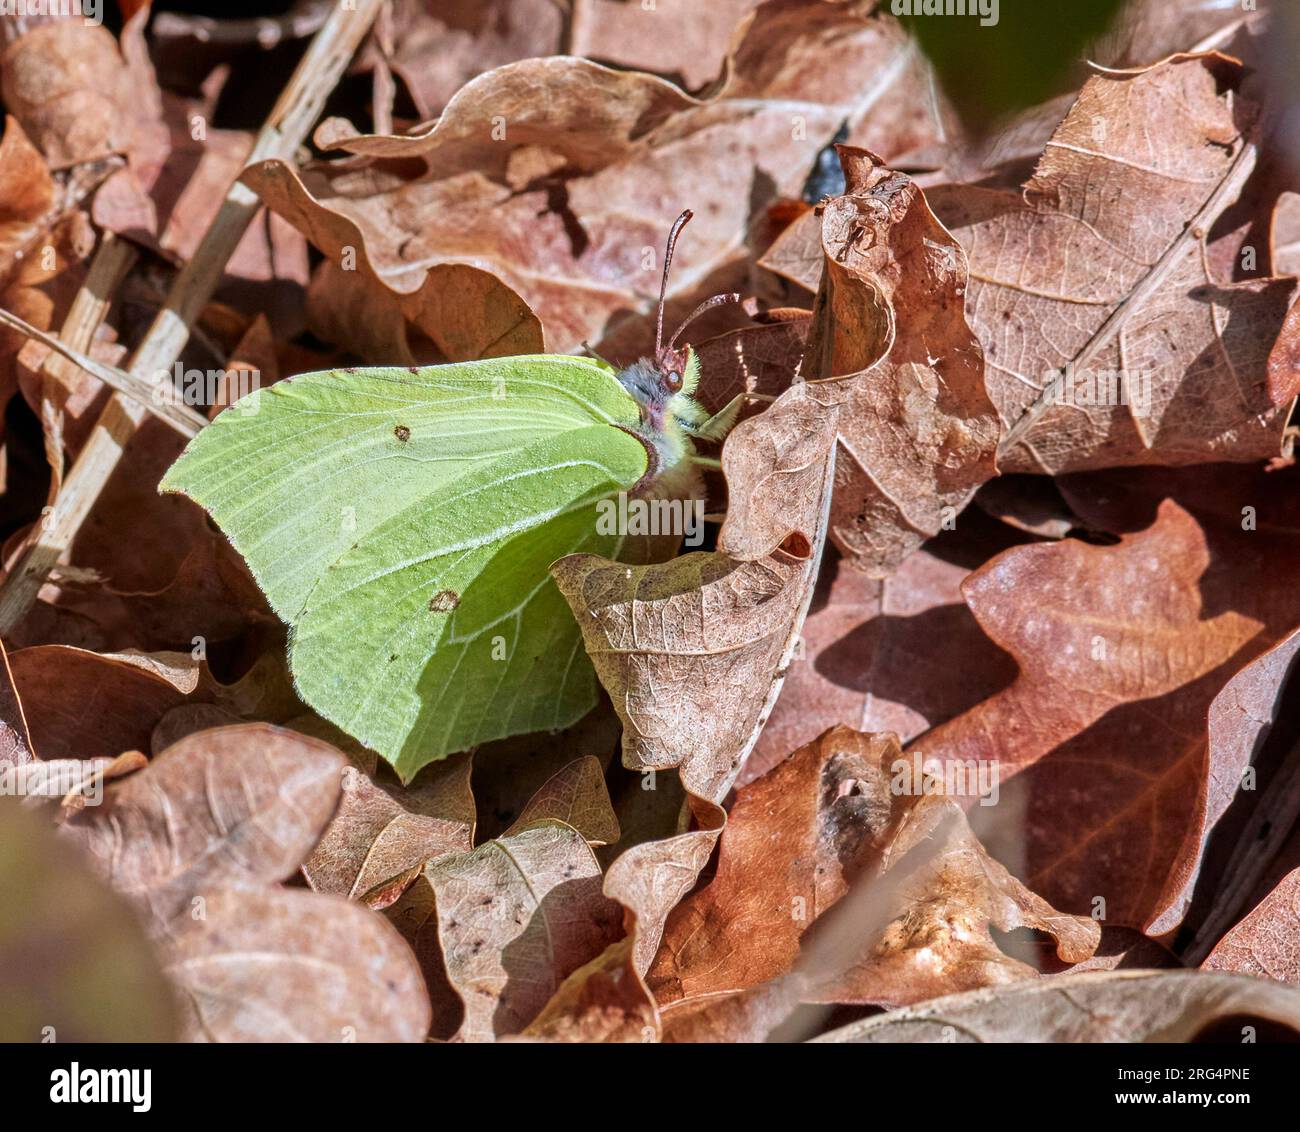 Papillon en pierre d'brimade se réchauffer sur les feuilles mortes après s'être réveillé de l'hibernation lors d'une journée de printemps ensoleillée. Hurst Meadows, East Molesey, Surrey, Royaume-Uni. Banque D'Images